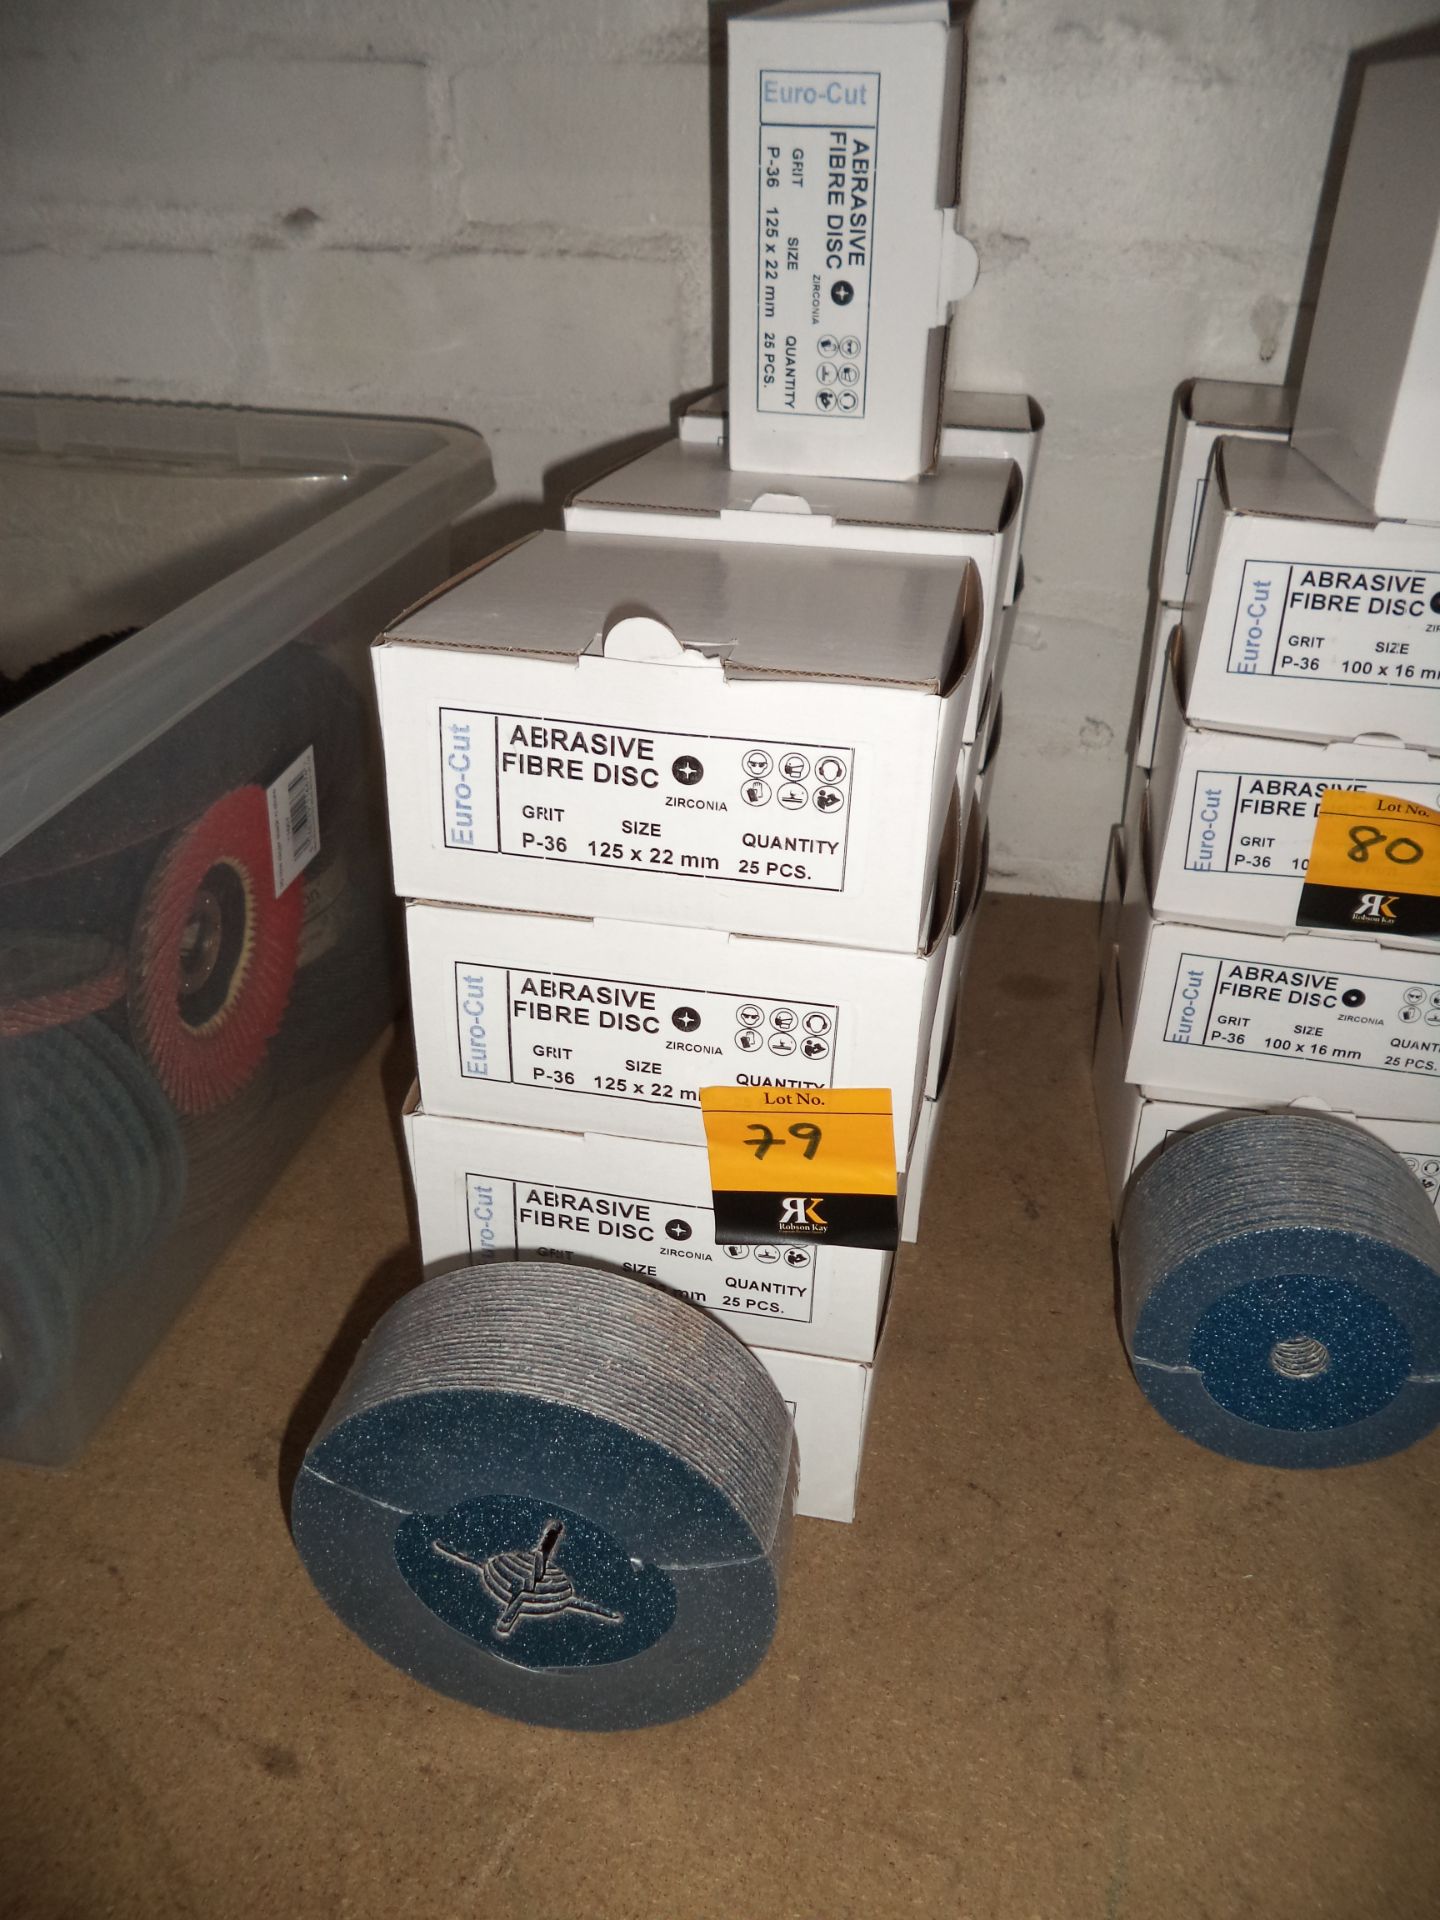 325 off Abrasive Fibre sanding discs, 125mm, zirconia, grit P-36 IMPORTANT: Please remember goods